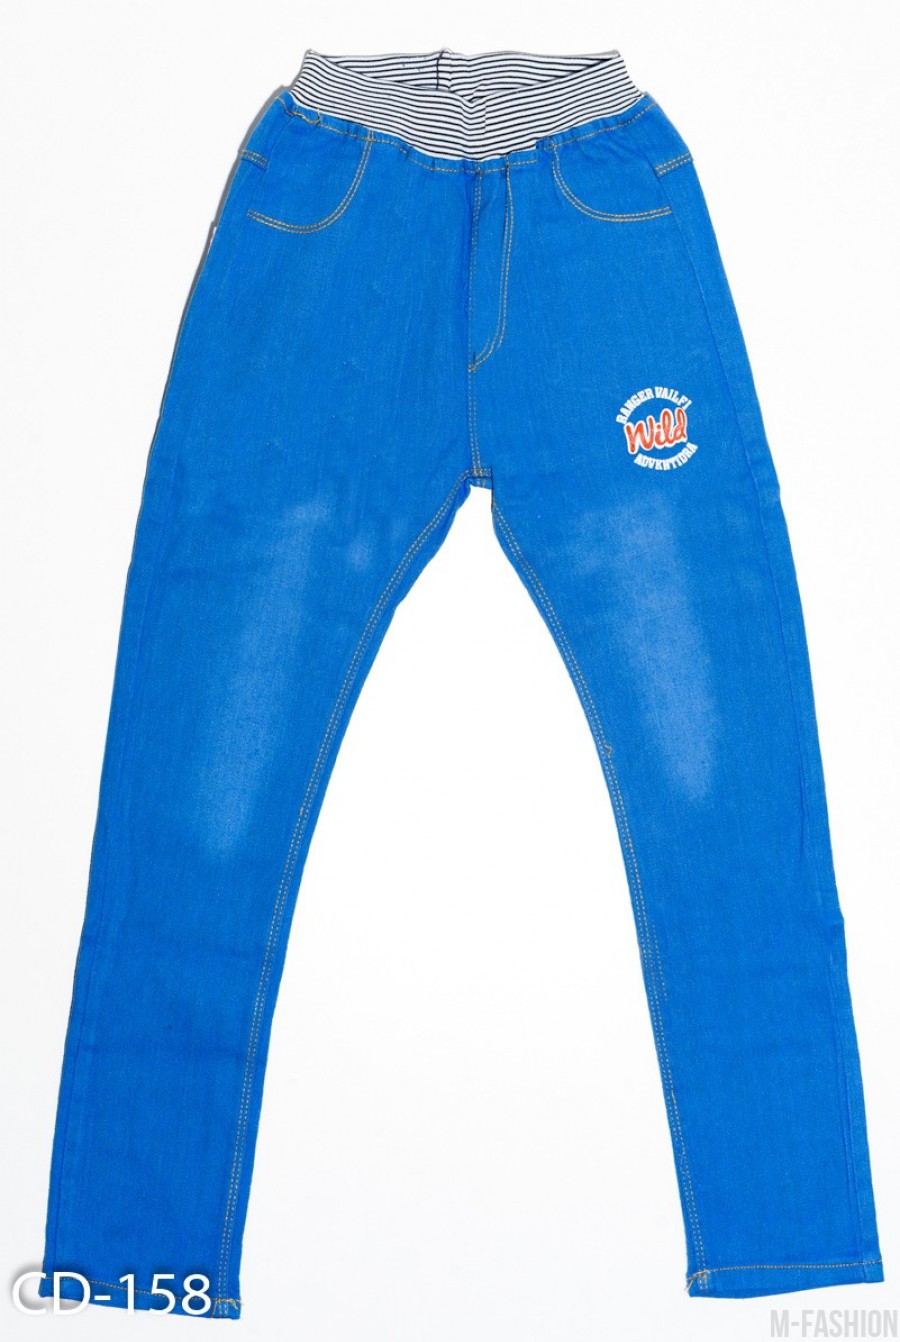 Голубые джинсы на резинке с принтом и карманами сзади - Фото 1